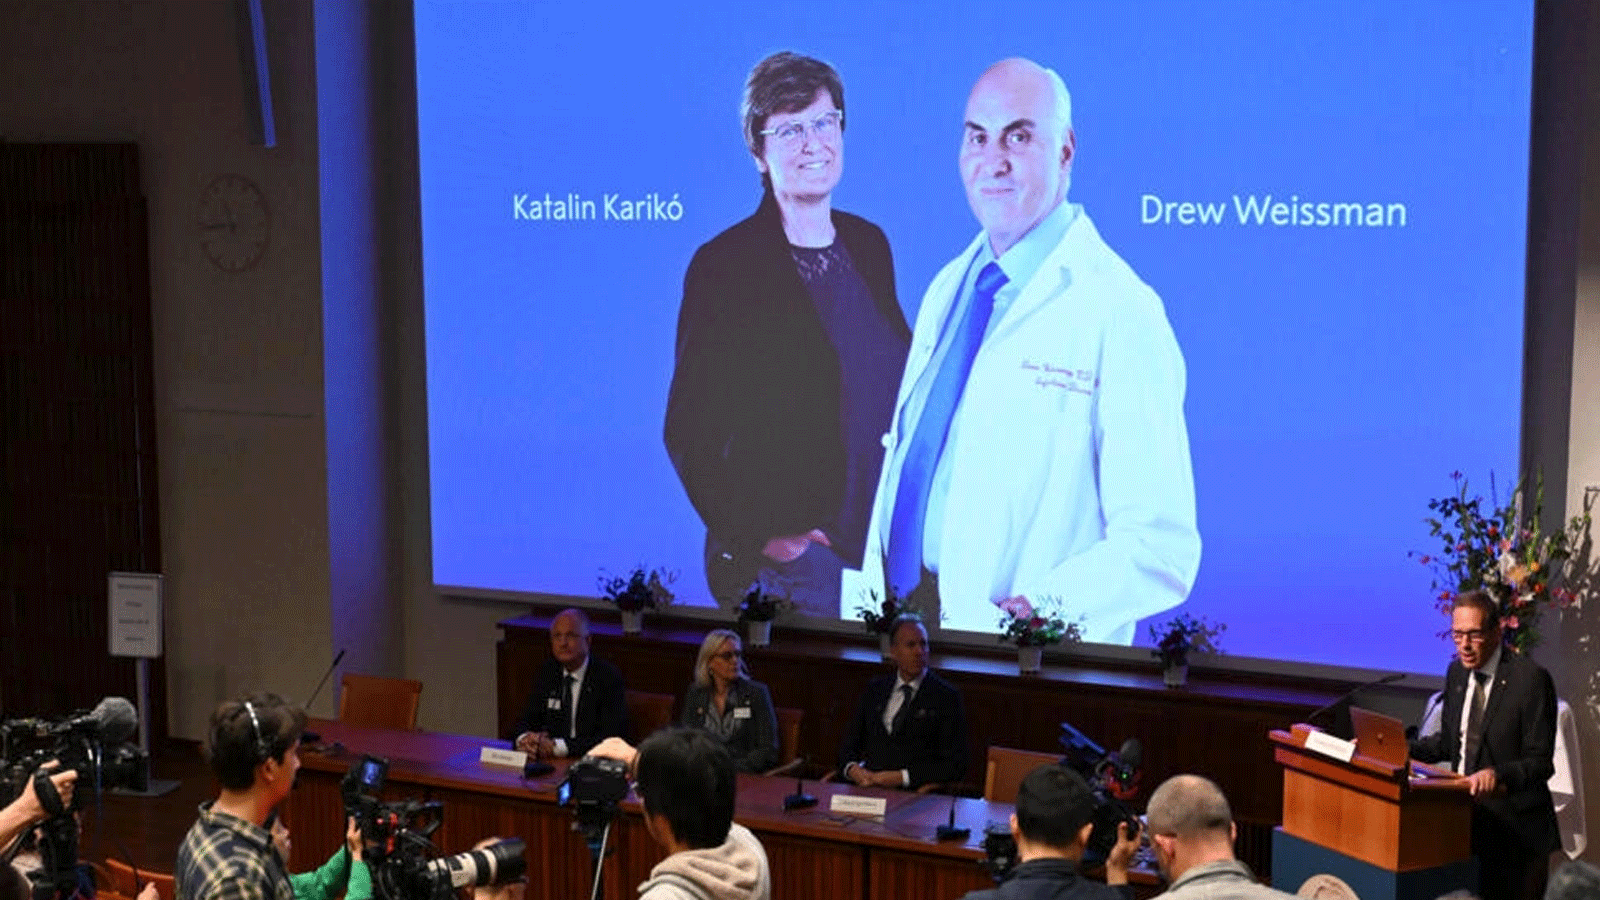 المجرية كاتالين كاريكو والأميركي درو وايزمان يفوزان بجائزة نوبل للطب لعملهما على تقنية الحمض النووي الريبوزي المرسال (mRNA). ستوكهولم، السويد في 2 أكتوبر(تشرين الثاني) 2023